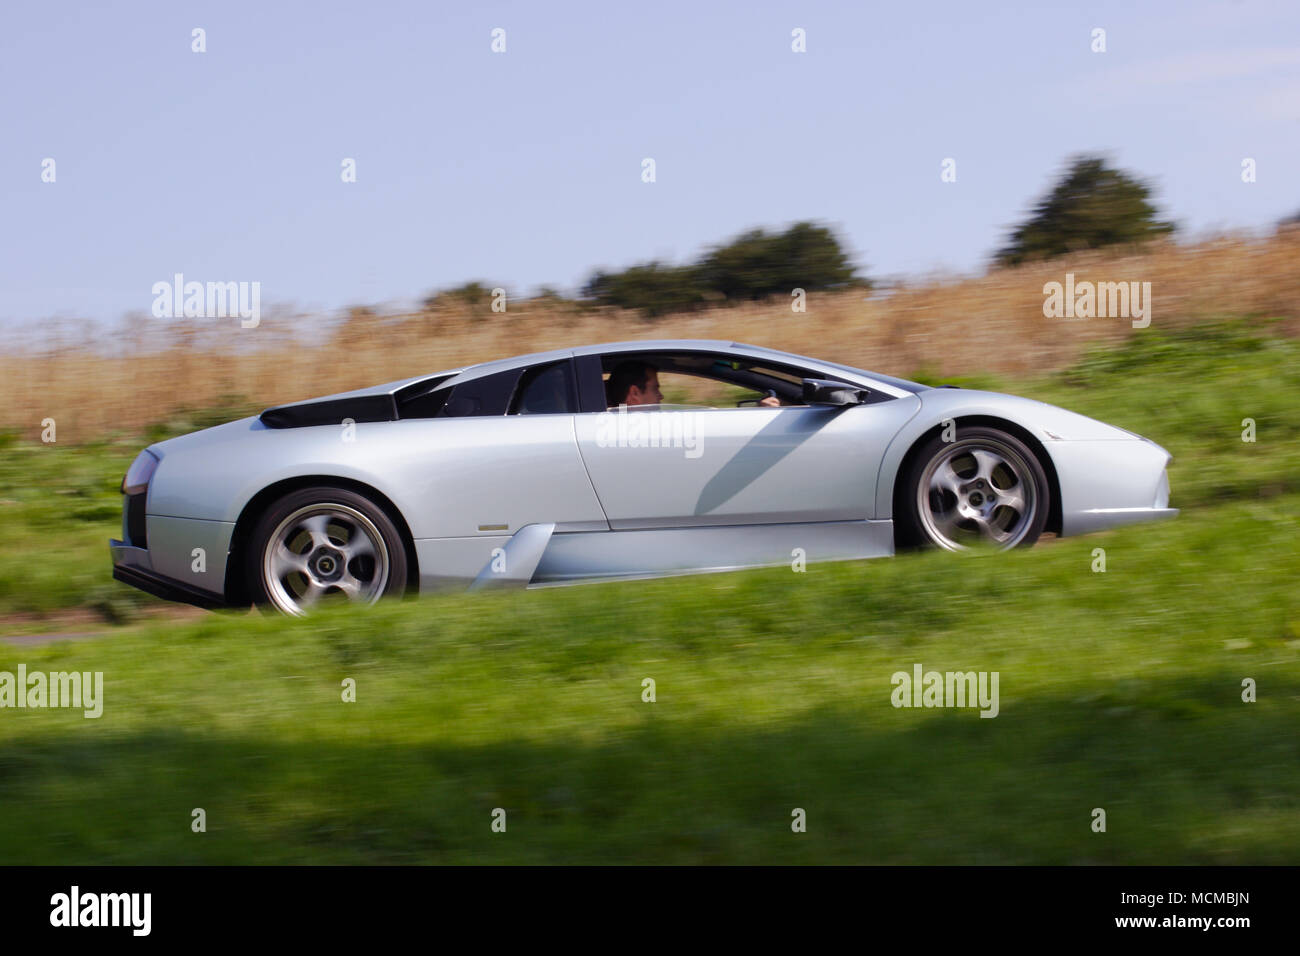 Profil de l'angle faible (vue de côté) d'une Lamborghini Murciélago supercar hypercar argent conduite rapide. Banque D'Images